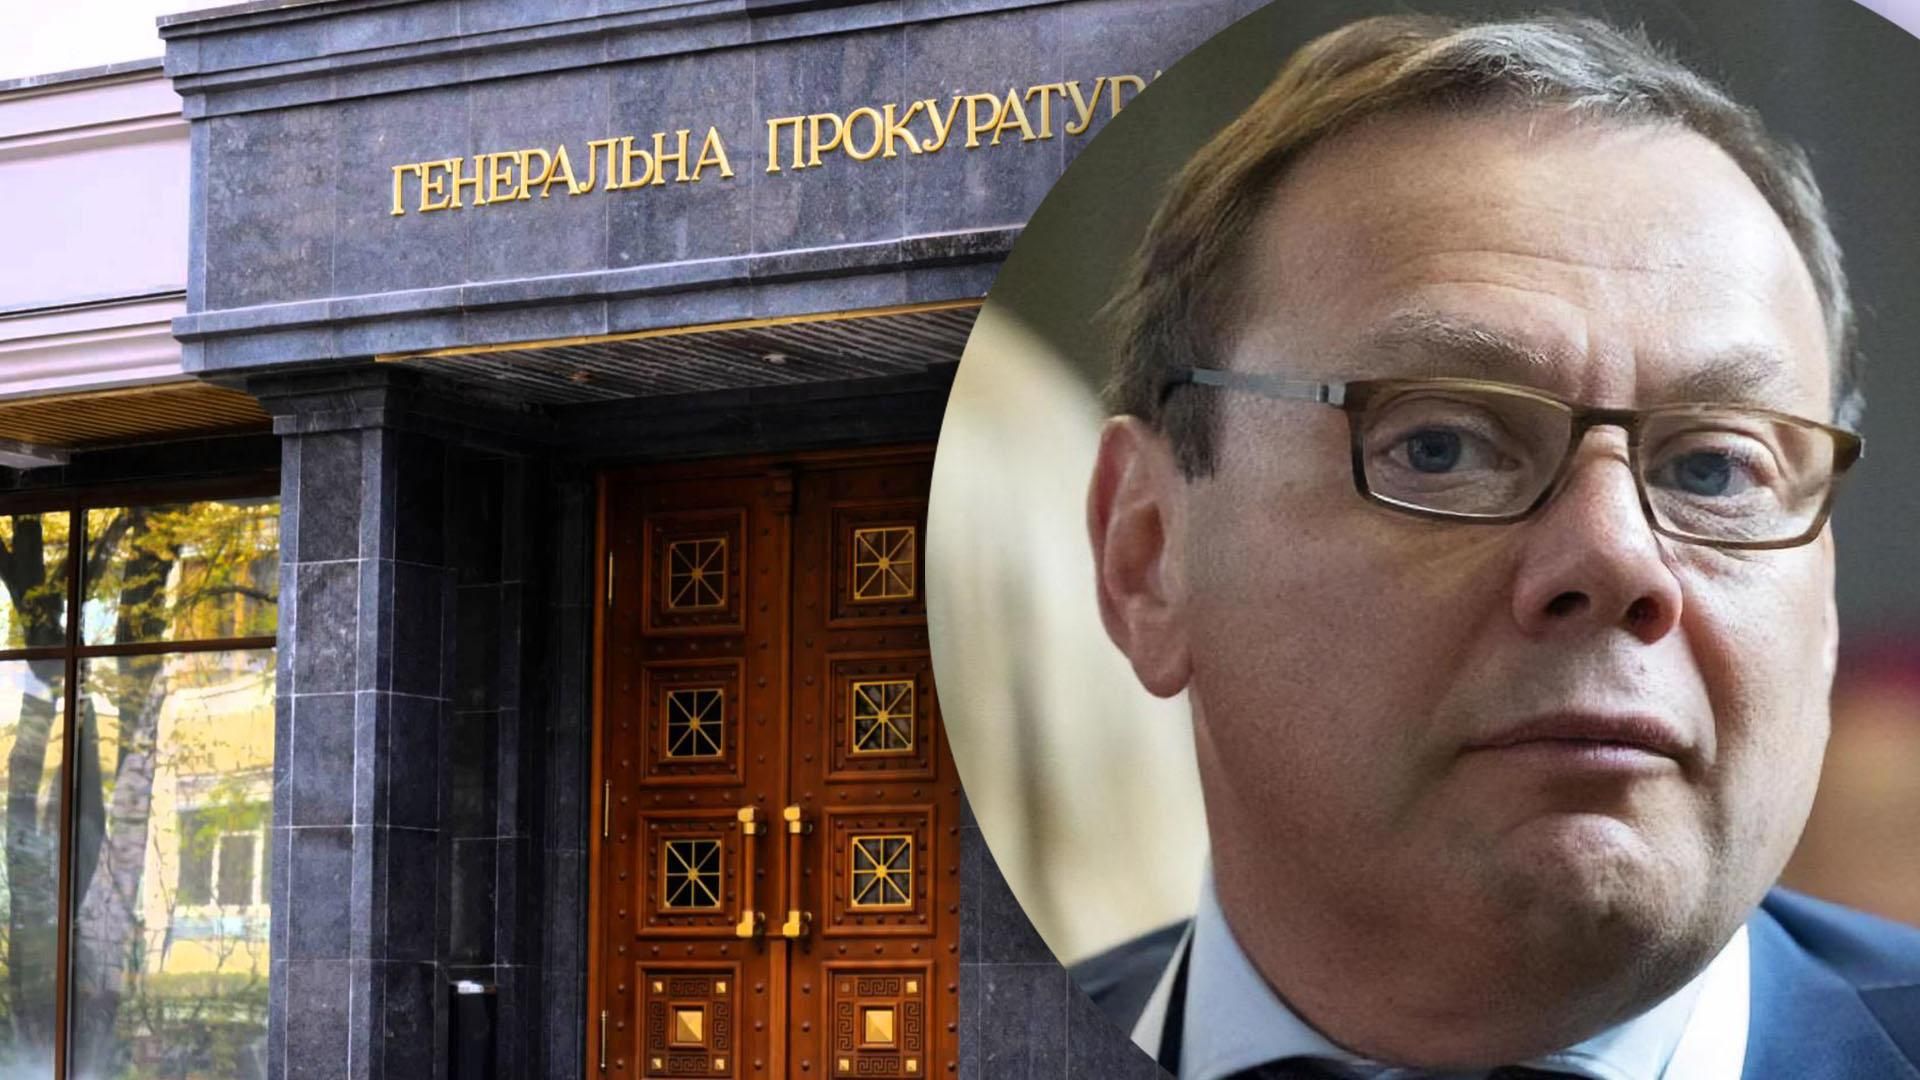 В Украине арестовали активы российского олигарха Фридмана более чем на 12 миллиардов гривен